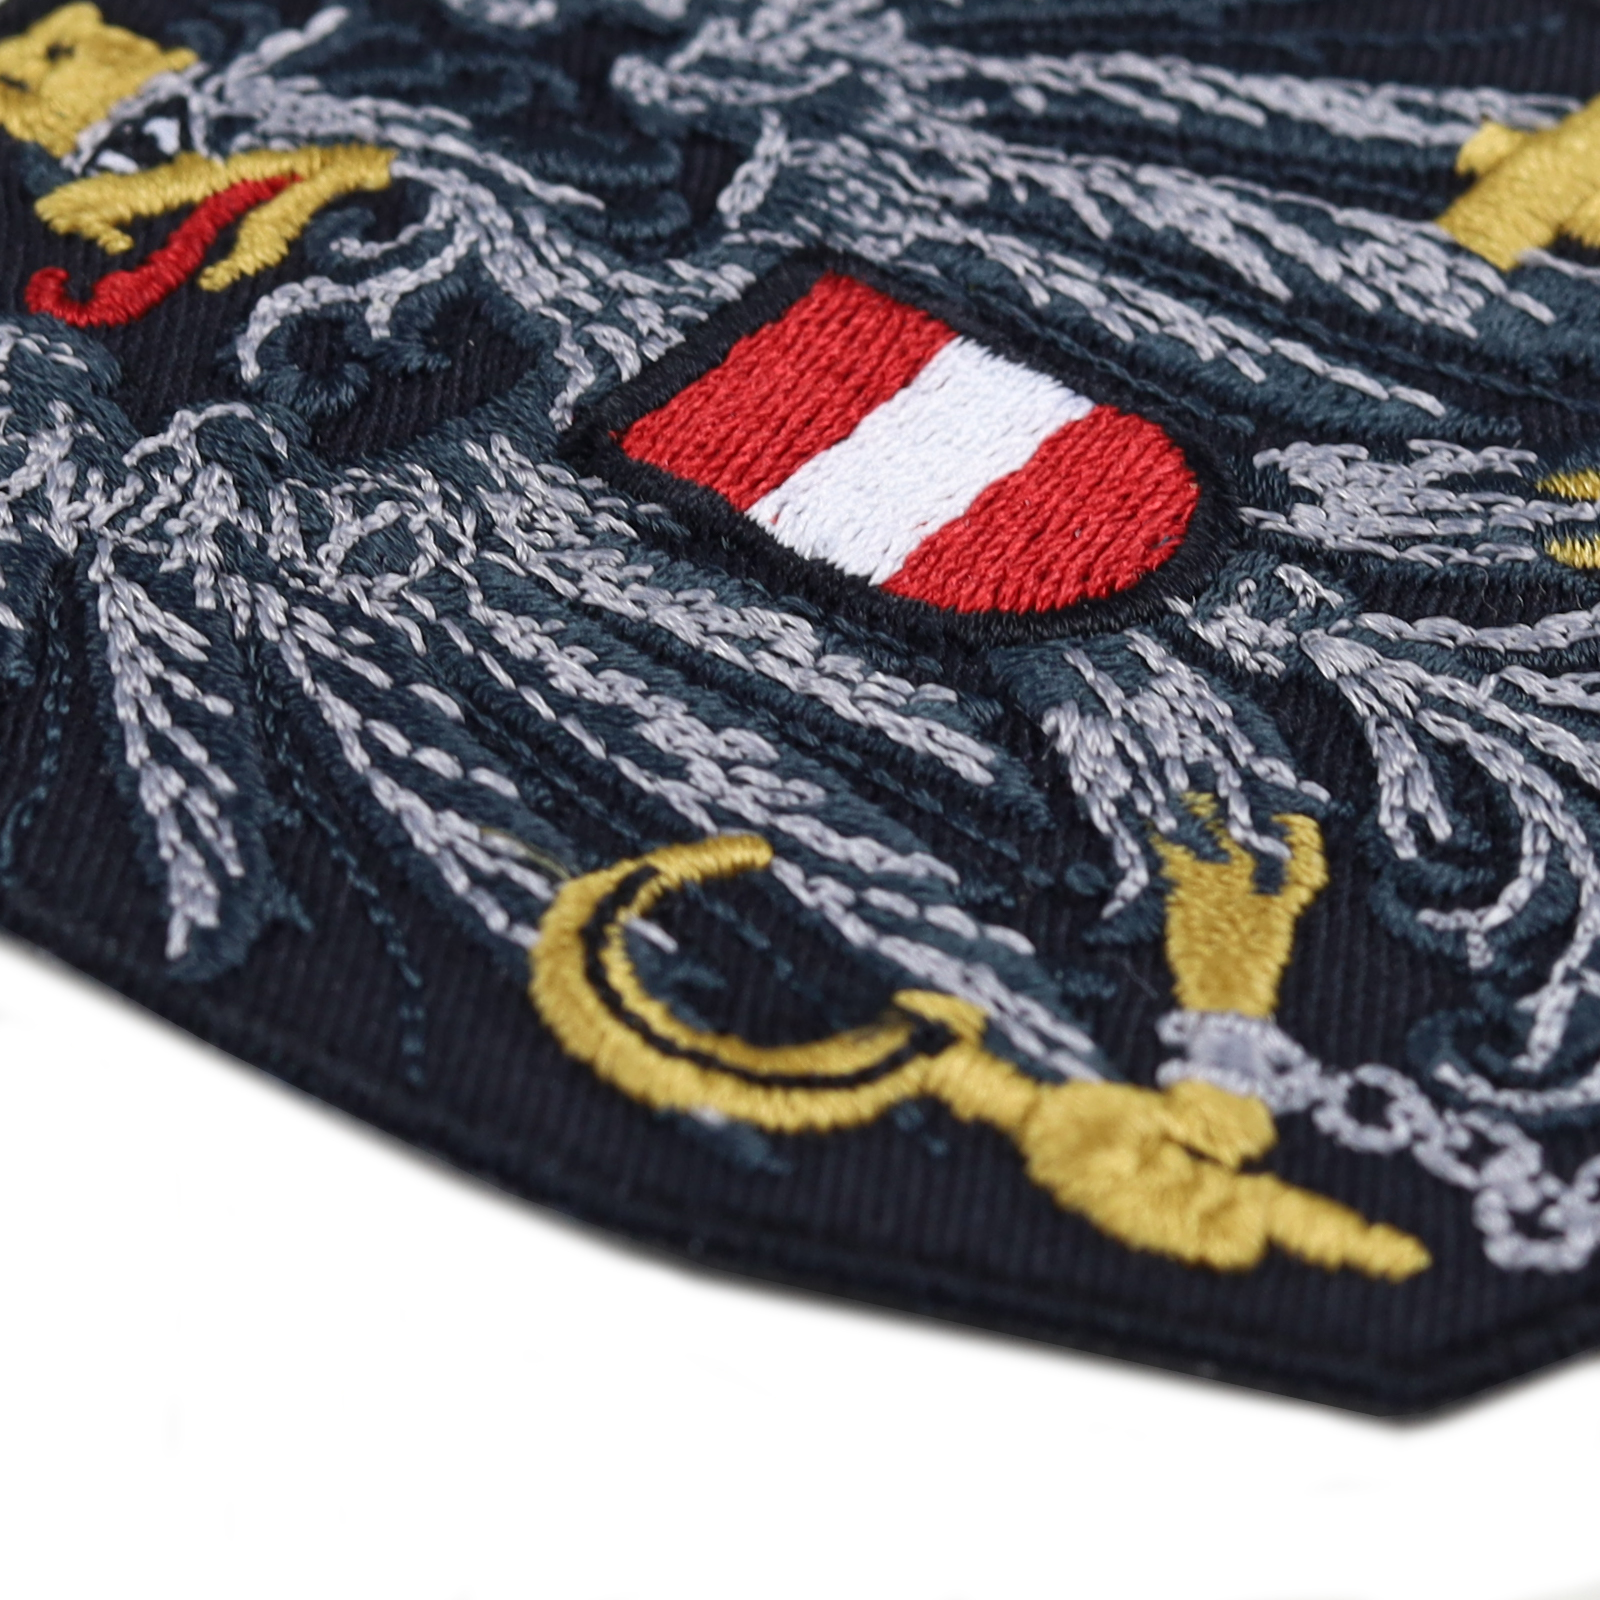 Wappen Österreich - Patch